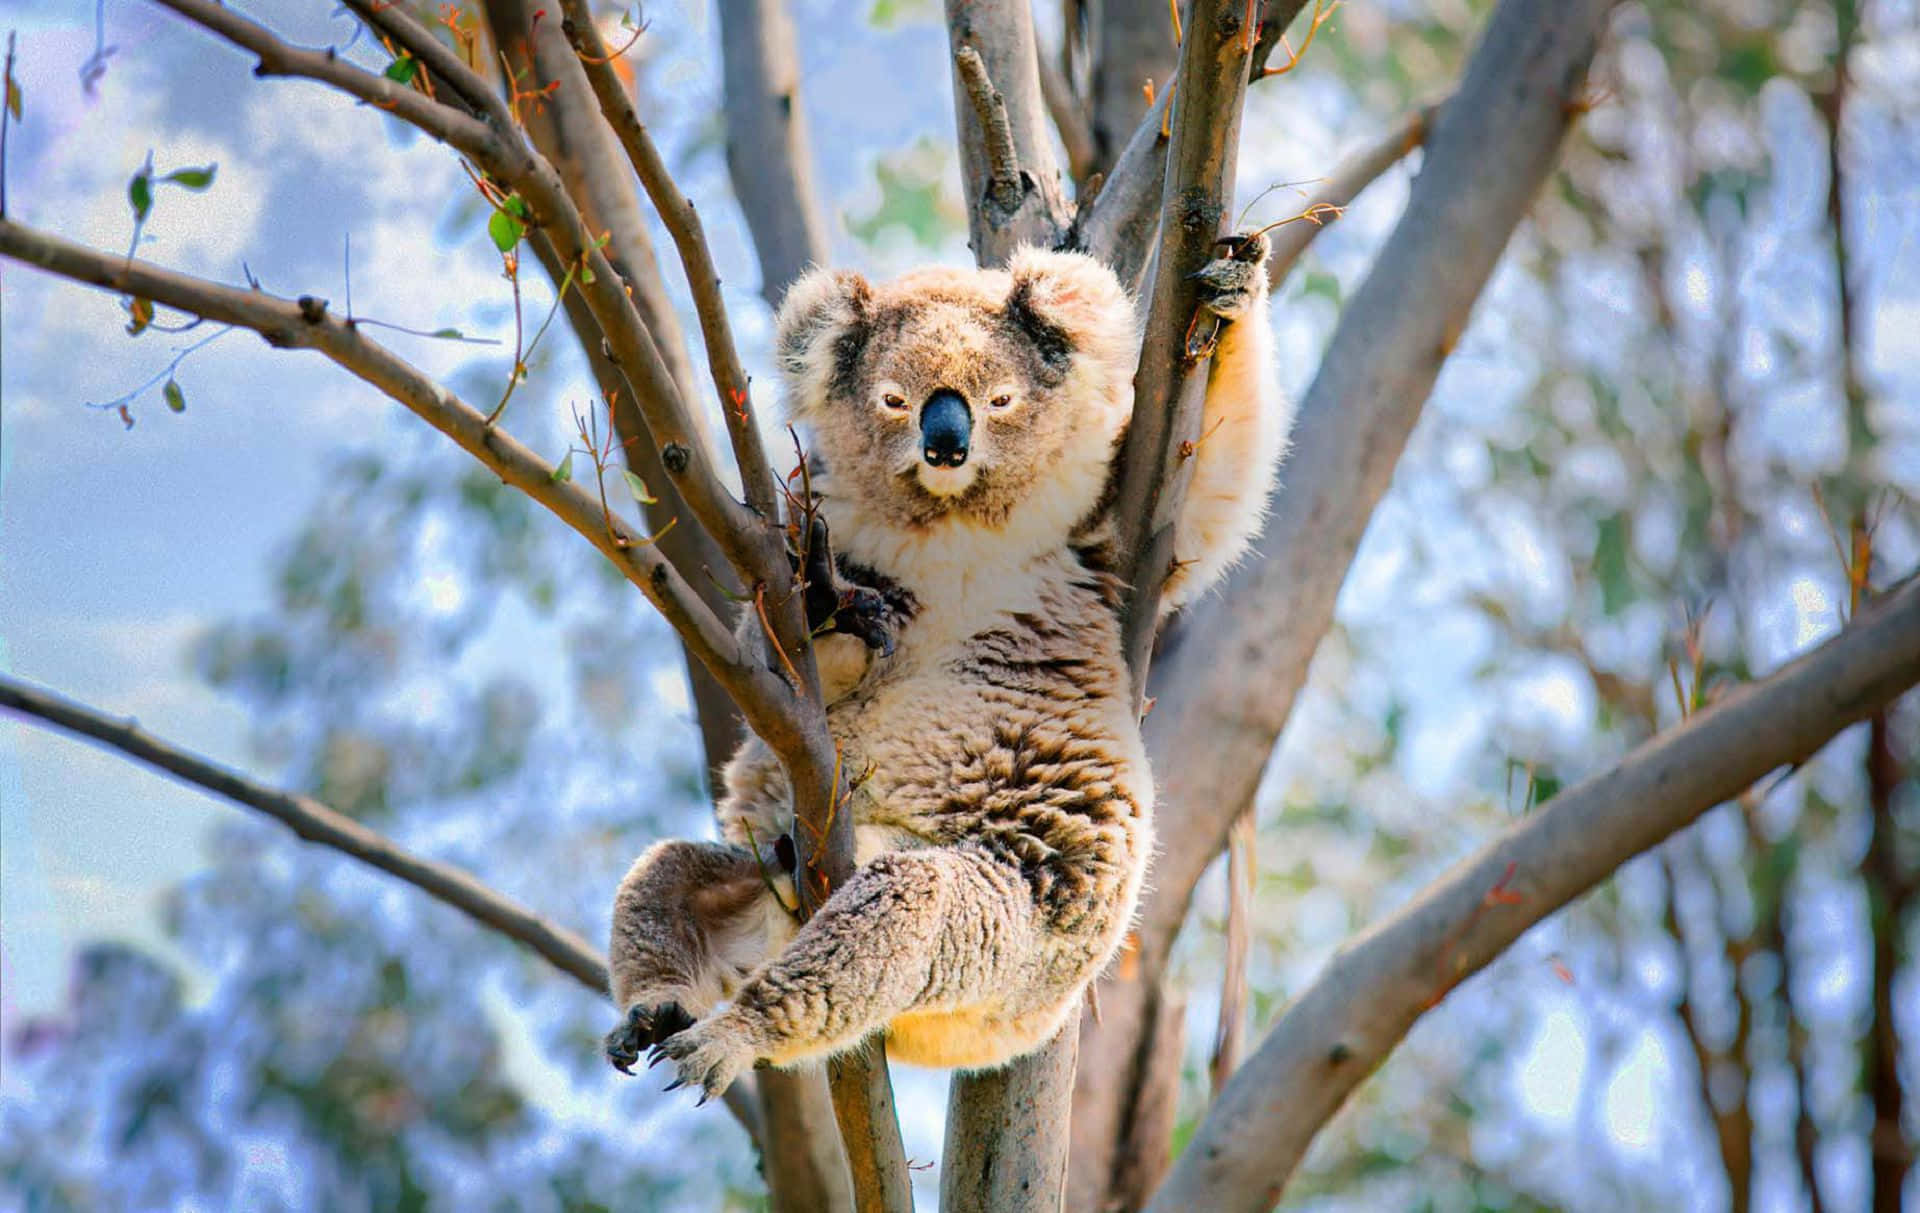 Attvara En Koala Handlar Om Att Ta Tid Att Koppla Av.